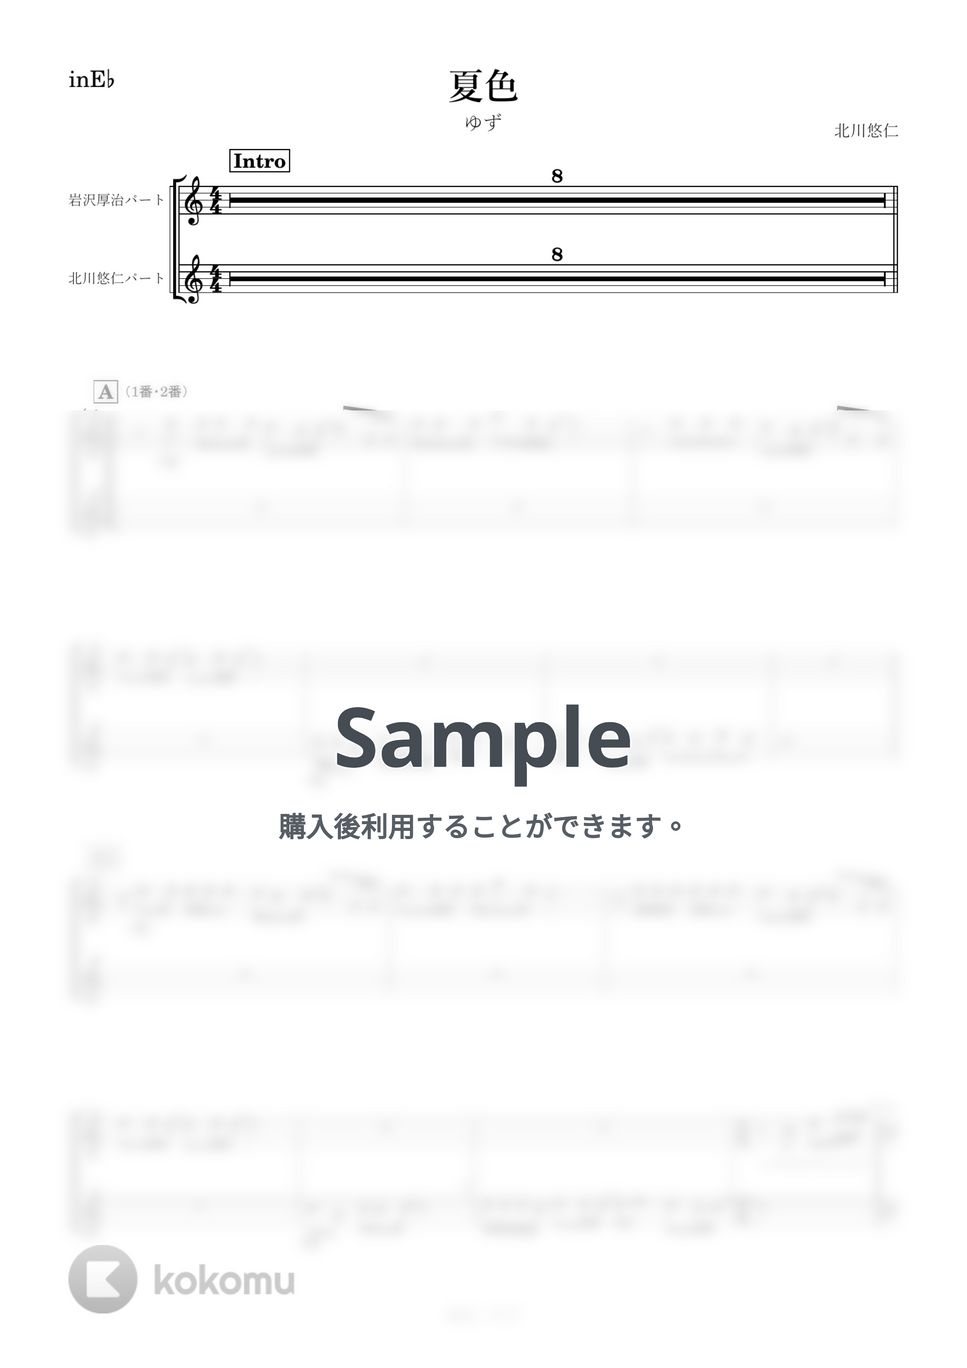 ゆず - 夏色 (E♭) by kanamusic